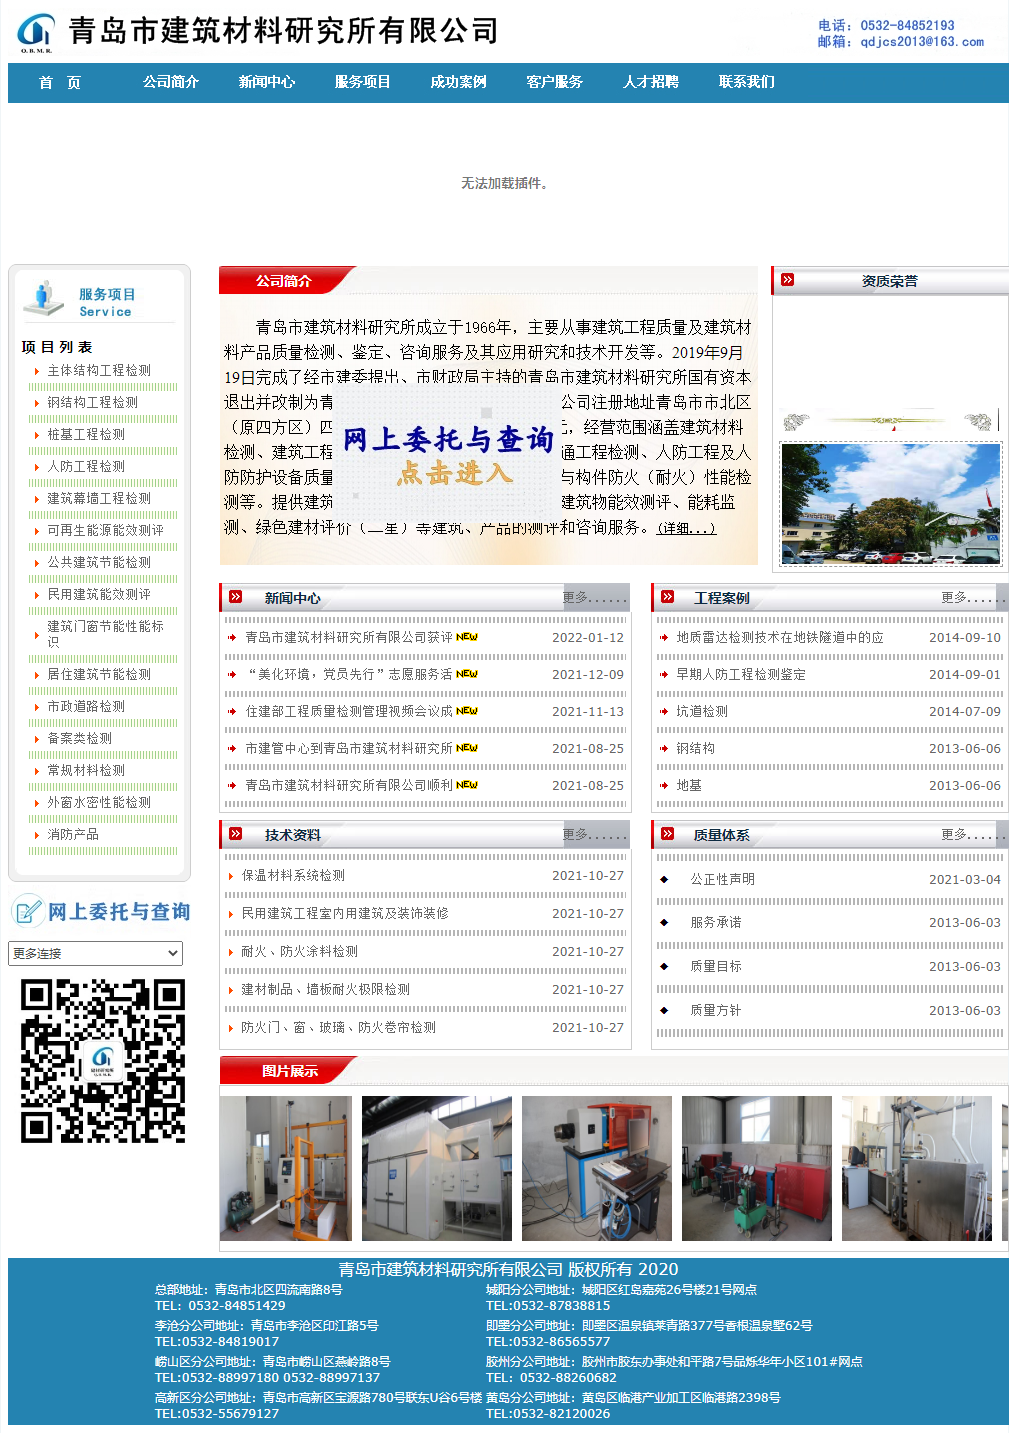 青岛市建筑材料研究所有限公司网站案例